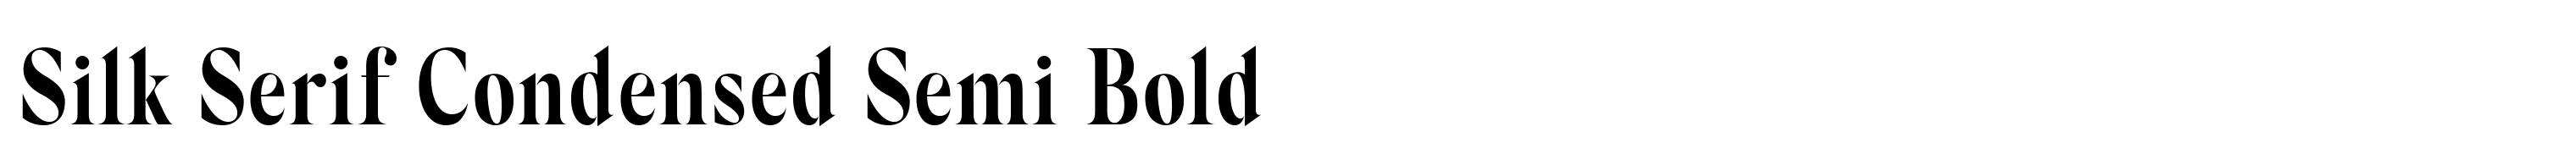 Silk Serif Condensed Semi Bold